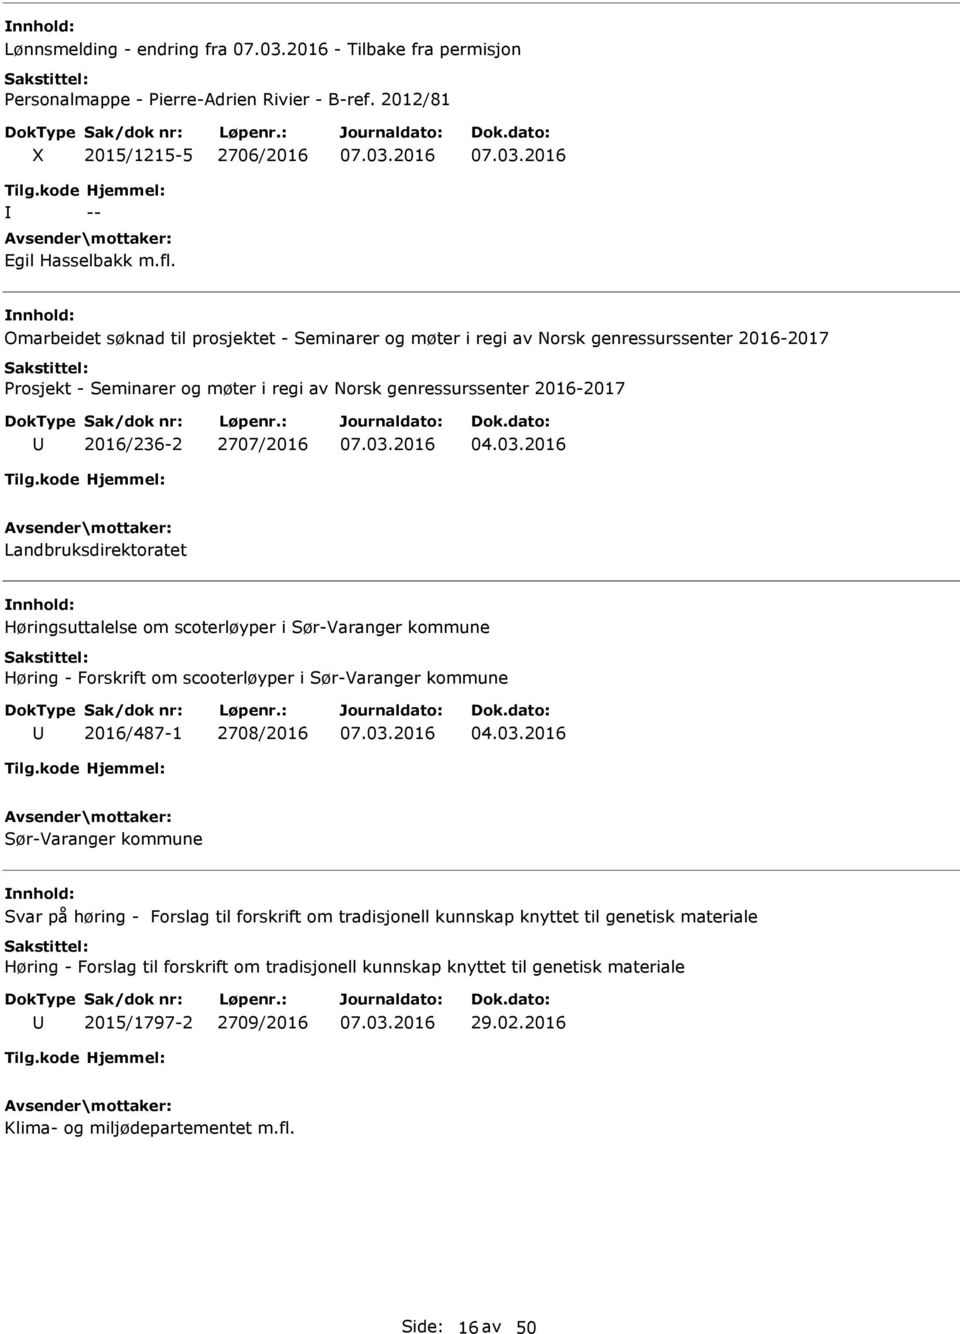 2016 Landbruksdirektoratet Høringsuttalelse om scoterløyper i Sør-Varanger kommune Høring - Forskrift om scooterløyper i Sør-Varanger kommune 2016/487-1 2708/2016 04.03.